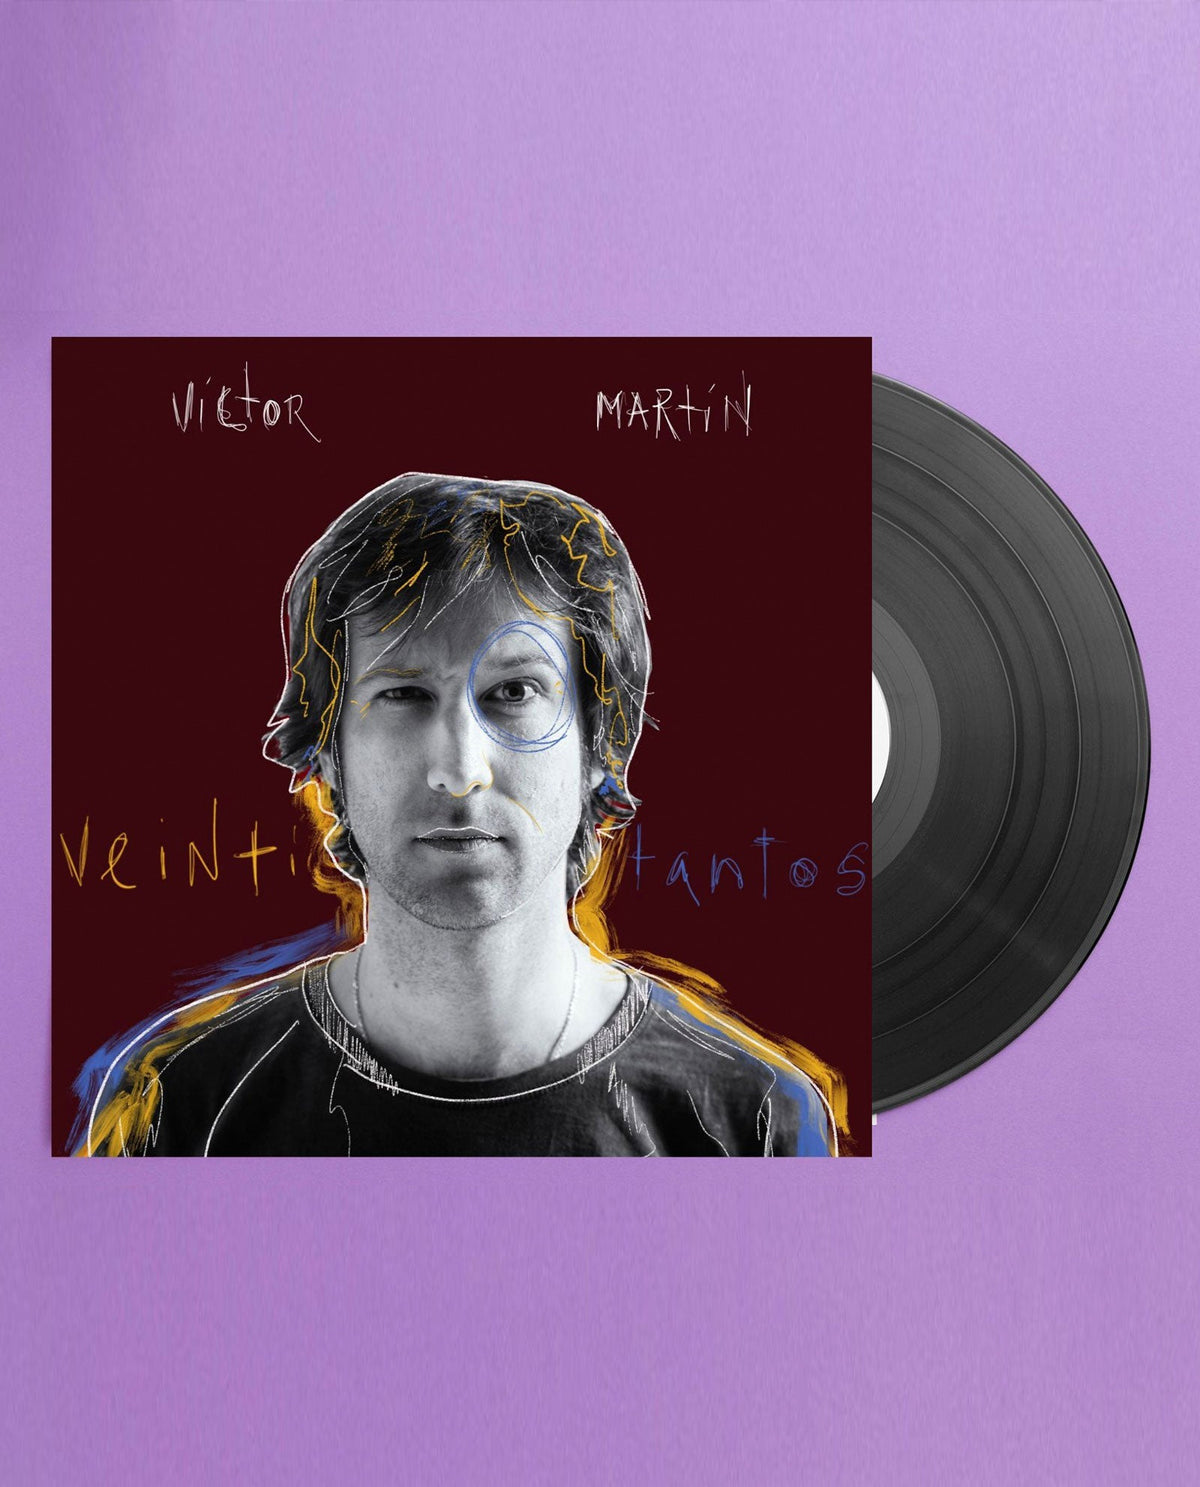 Víctor Martín - LP Vinilo + CD Firmado "Veintitantos" - D2fy · Rocktud - Metales Preciosos